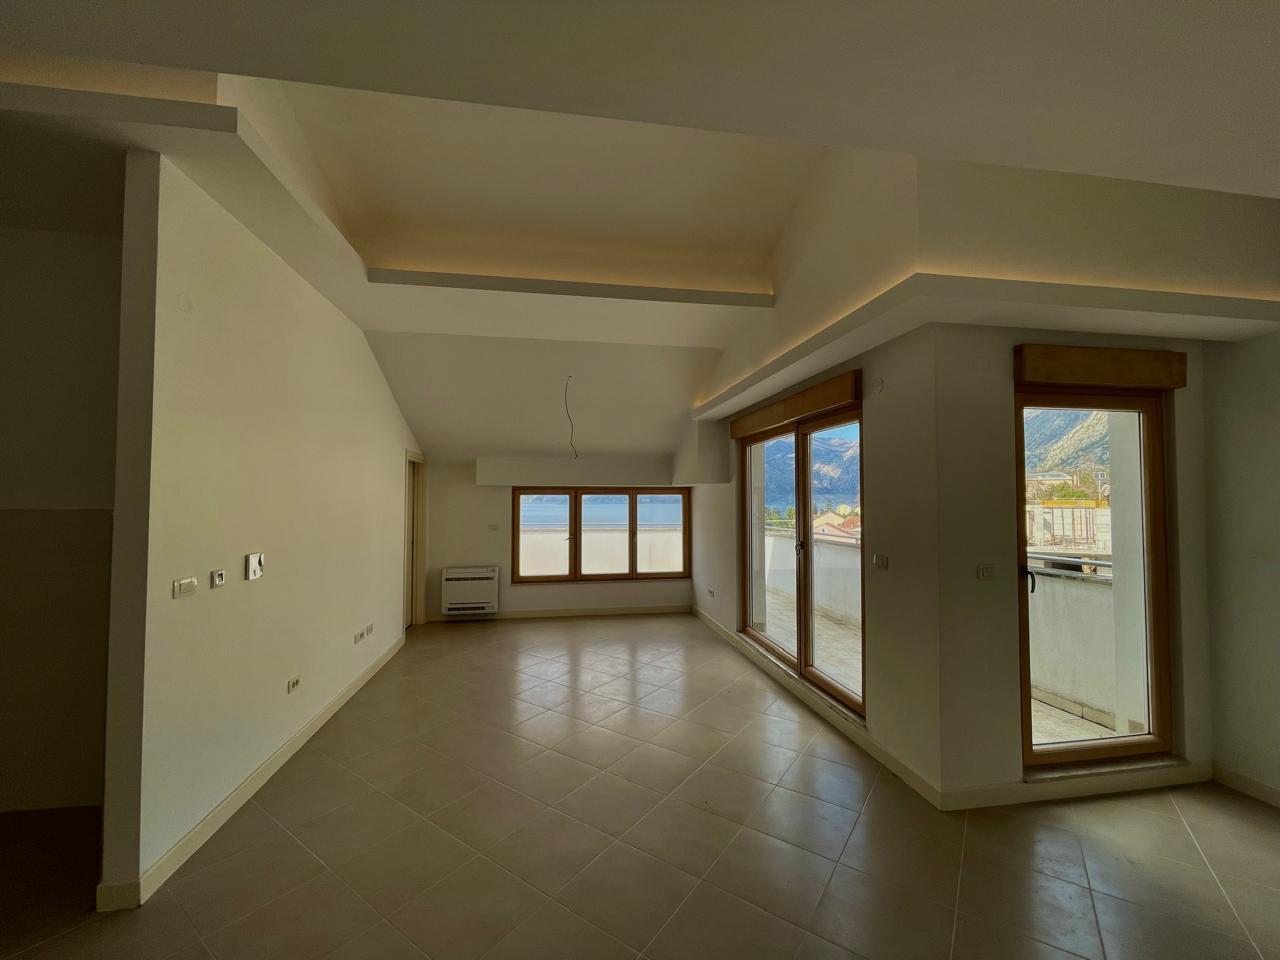 Neue 60 m2 große Wohnung mit Meerblick in Dobrota mit Pool und Terrasse